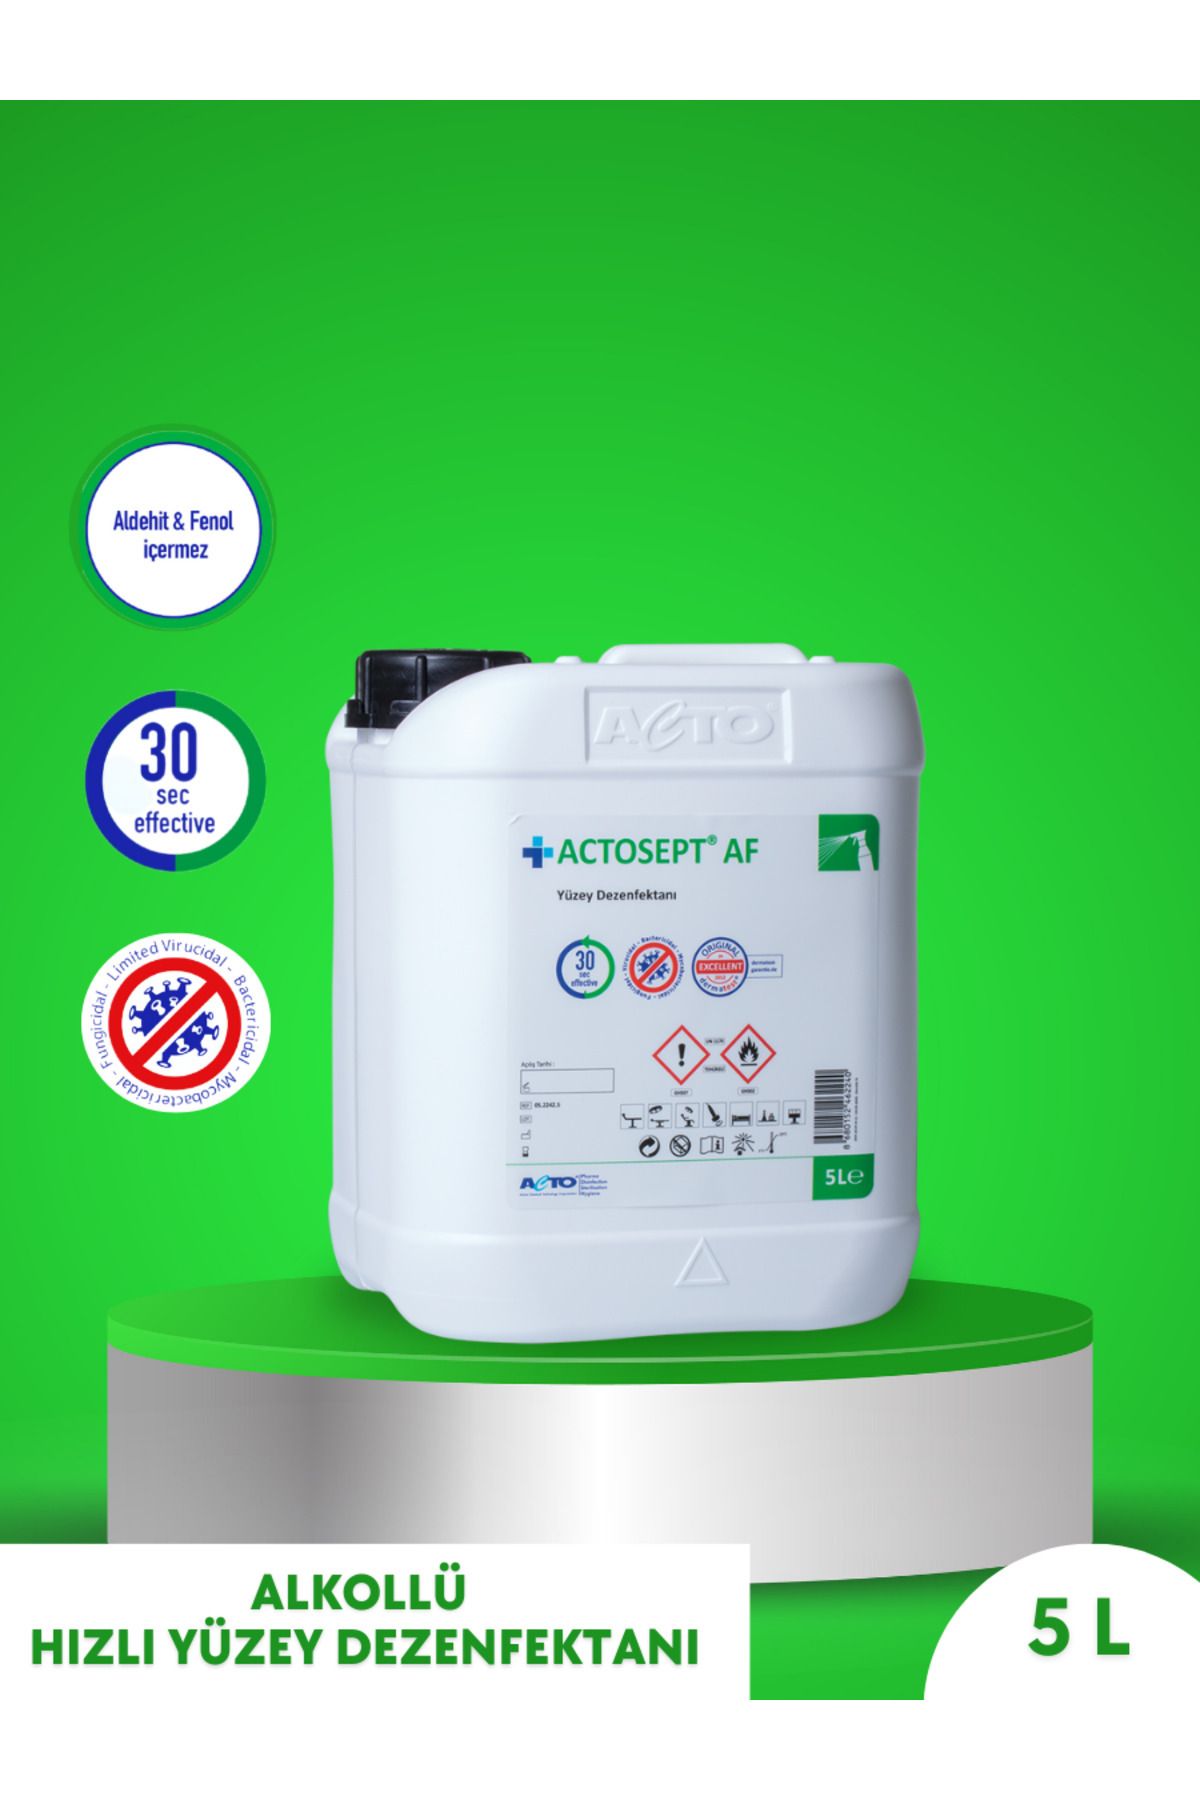 Actosept AF Actosept® Af 5 Litre | Kullanıma Hazır Alkollü Yüzey Dezenfektanı 30 Saniyede Etkili